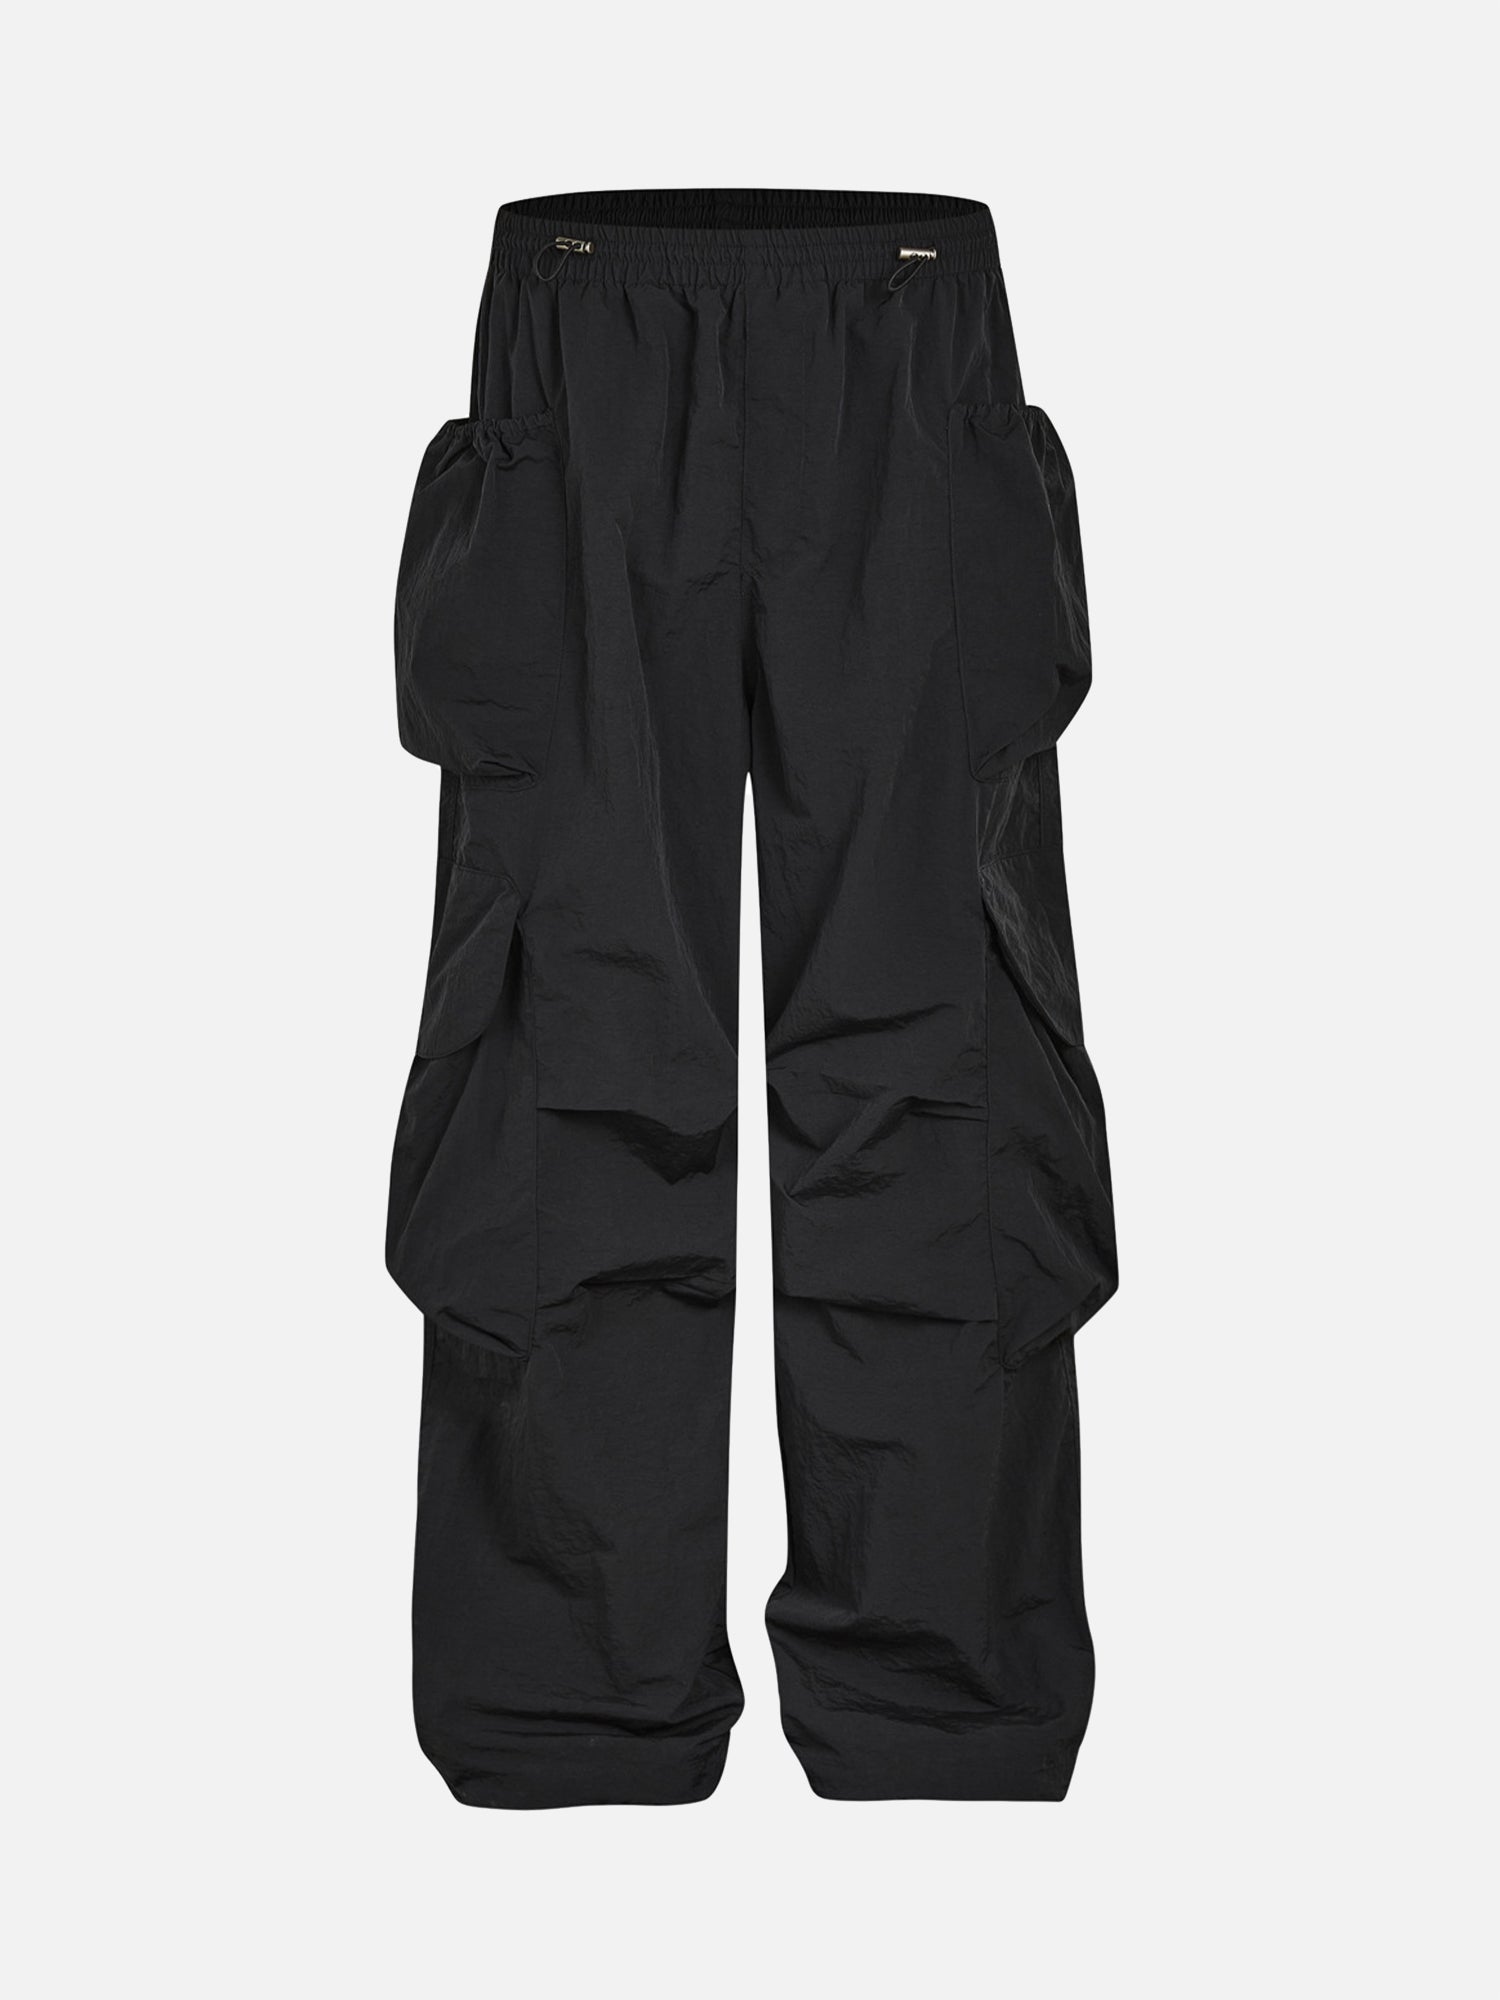 American Retro Street Waterproof Multi-pocket Casual Pants